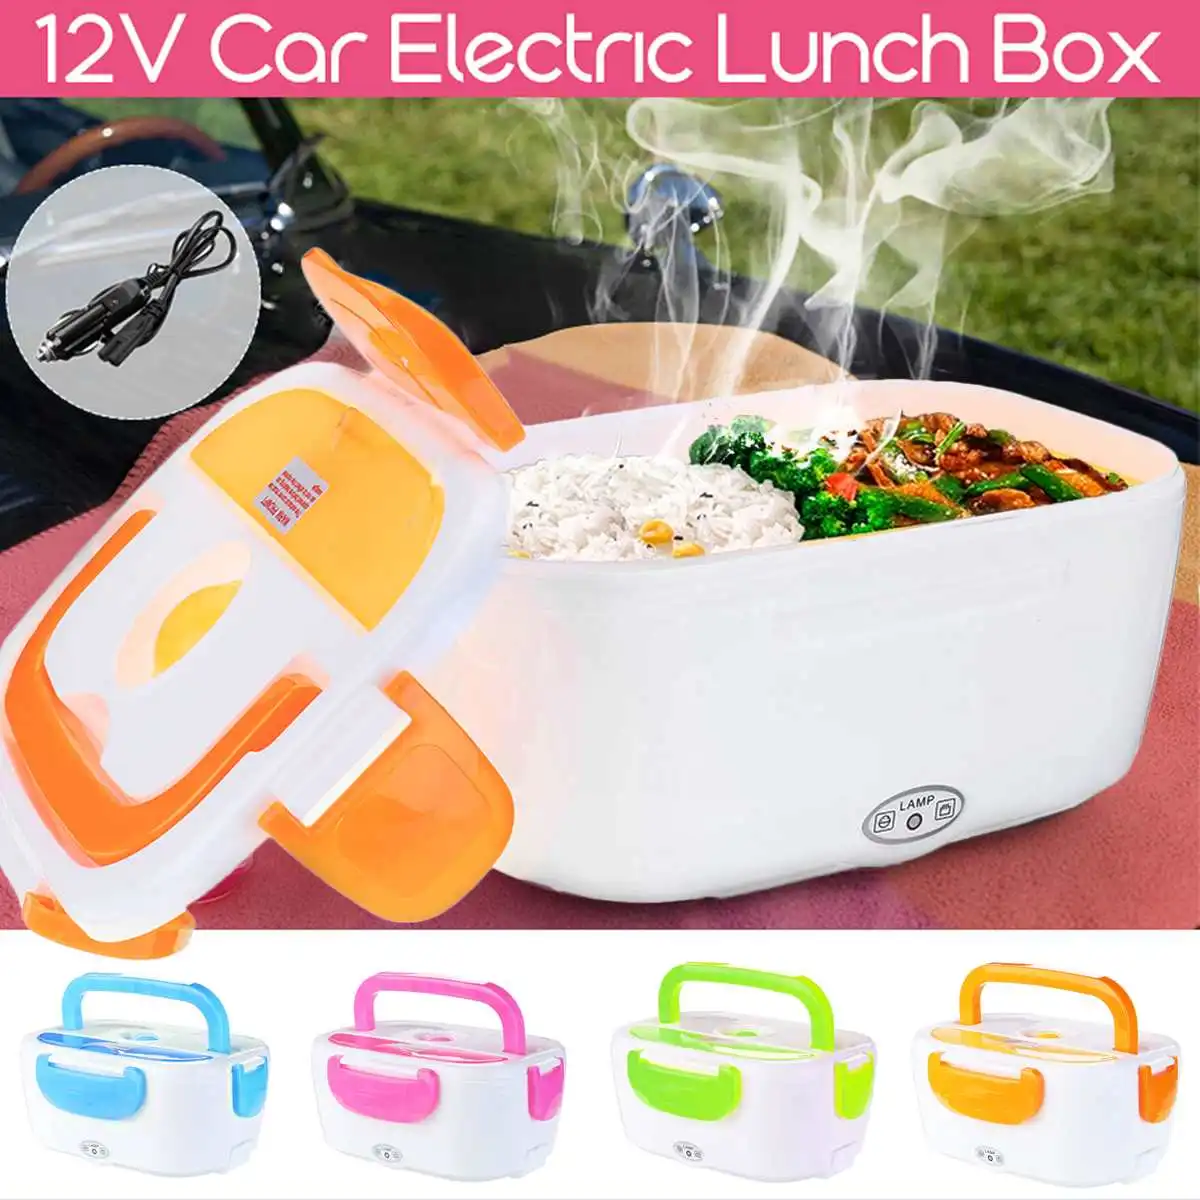 1.05L 12 В в Подогрев автомобиля Plug Отопление Bento коробки для обедов Открытый Пикник еда теплее контейнер школы Office дома путешествия